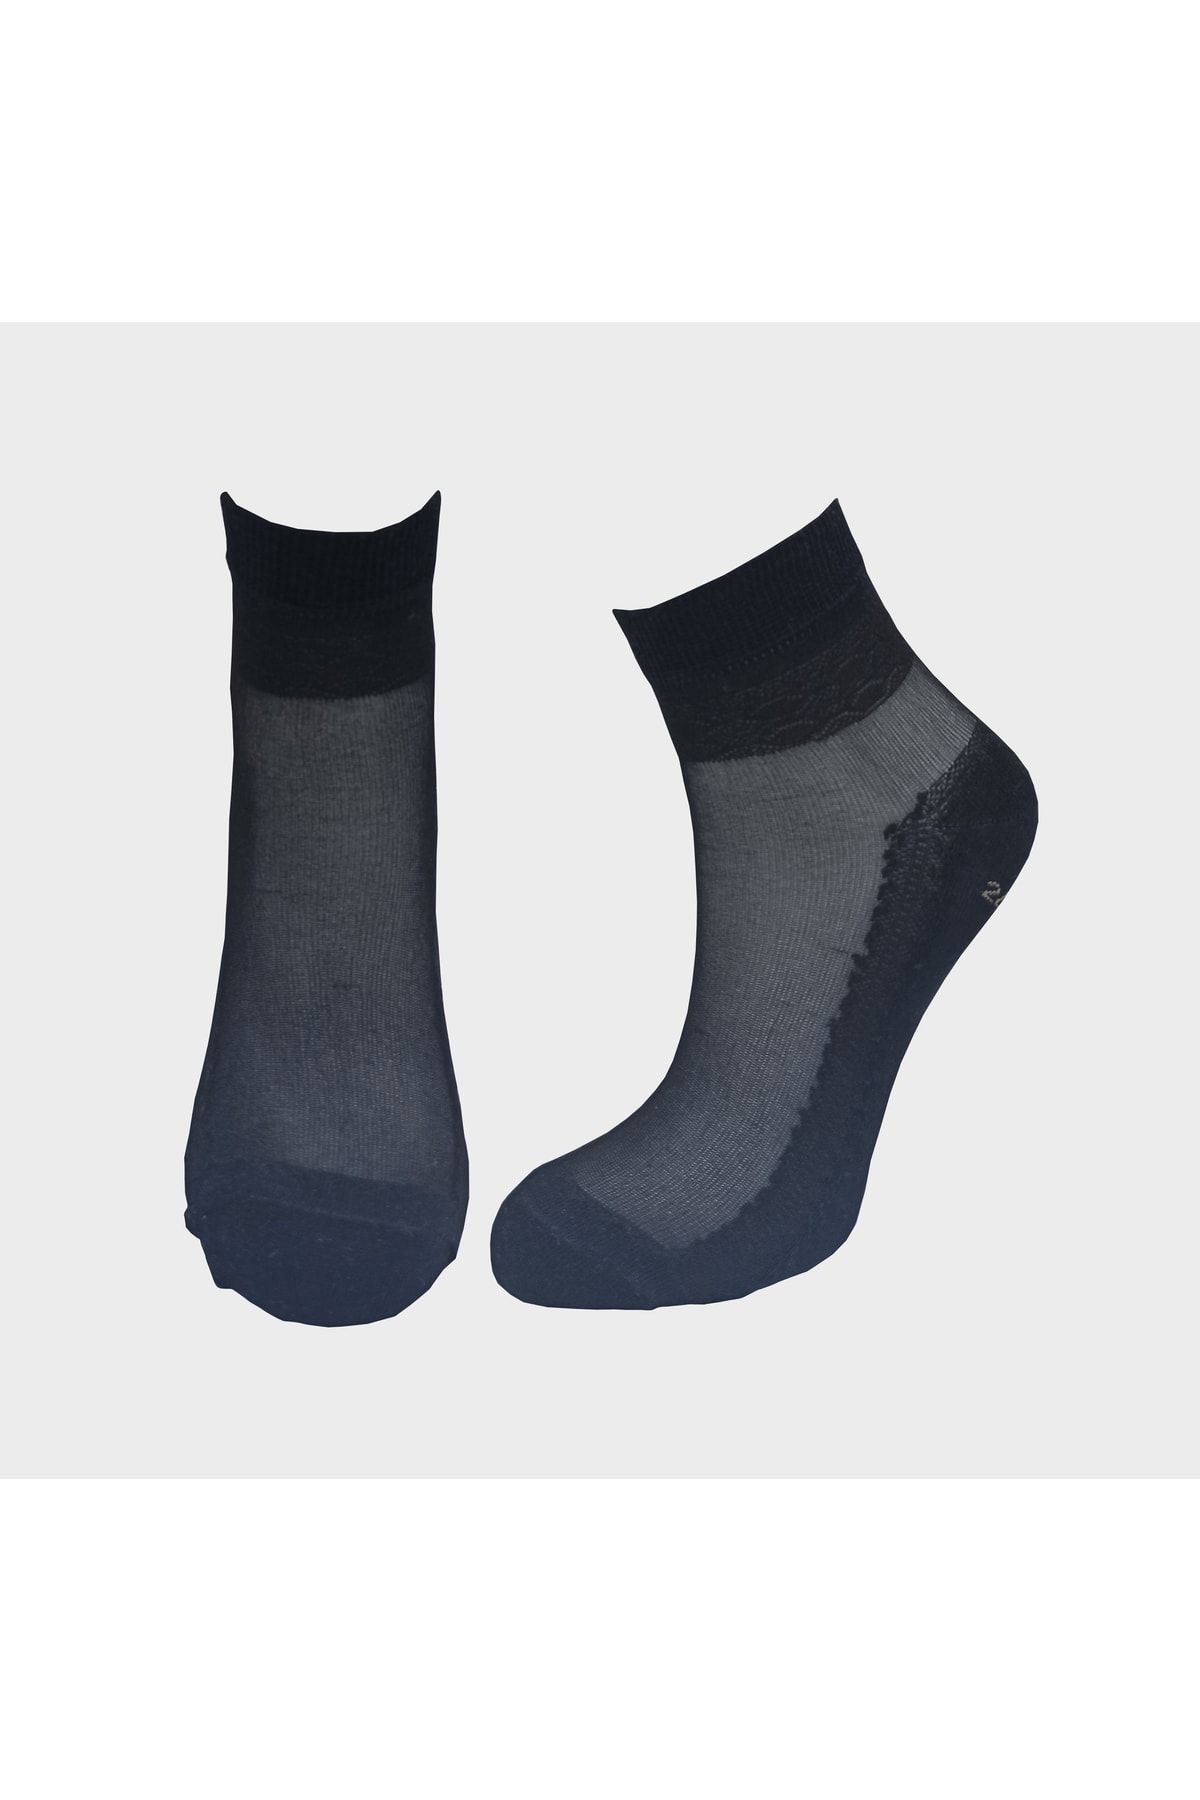 comstar Kadın Ince Soket Tek Çift Çorap, Kadın Çorap, Siyah Çorap, Ten Rengi Çorap,soket Çorap,desenli Çorap